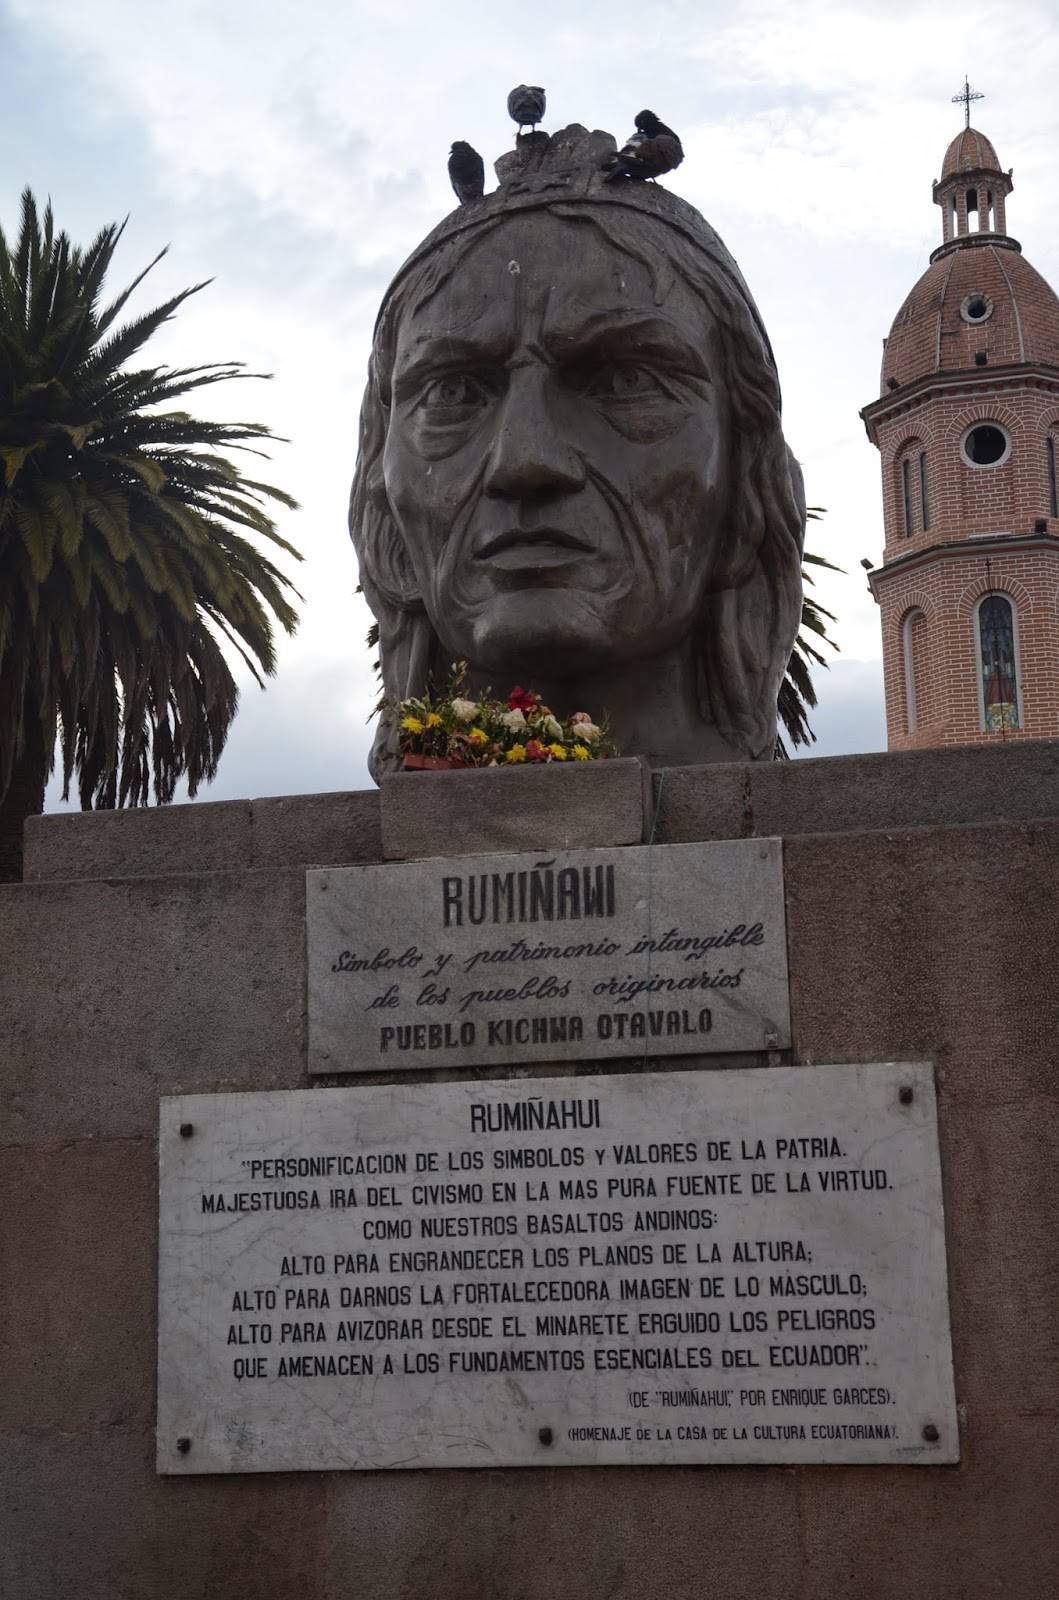 Rumiñawi monument at Plaza Bolívar in Otavalo, Ecuador